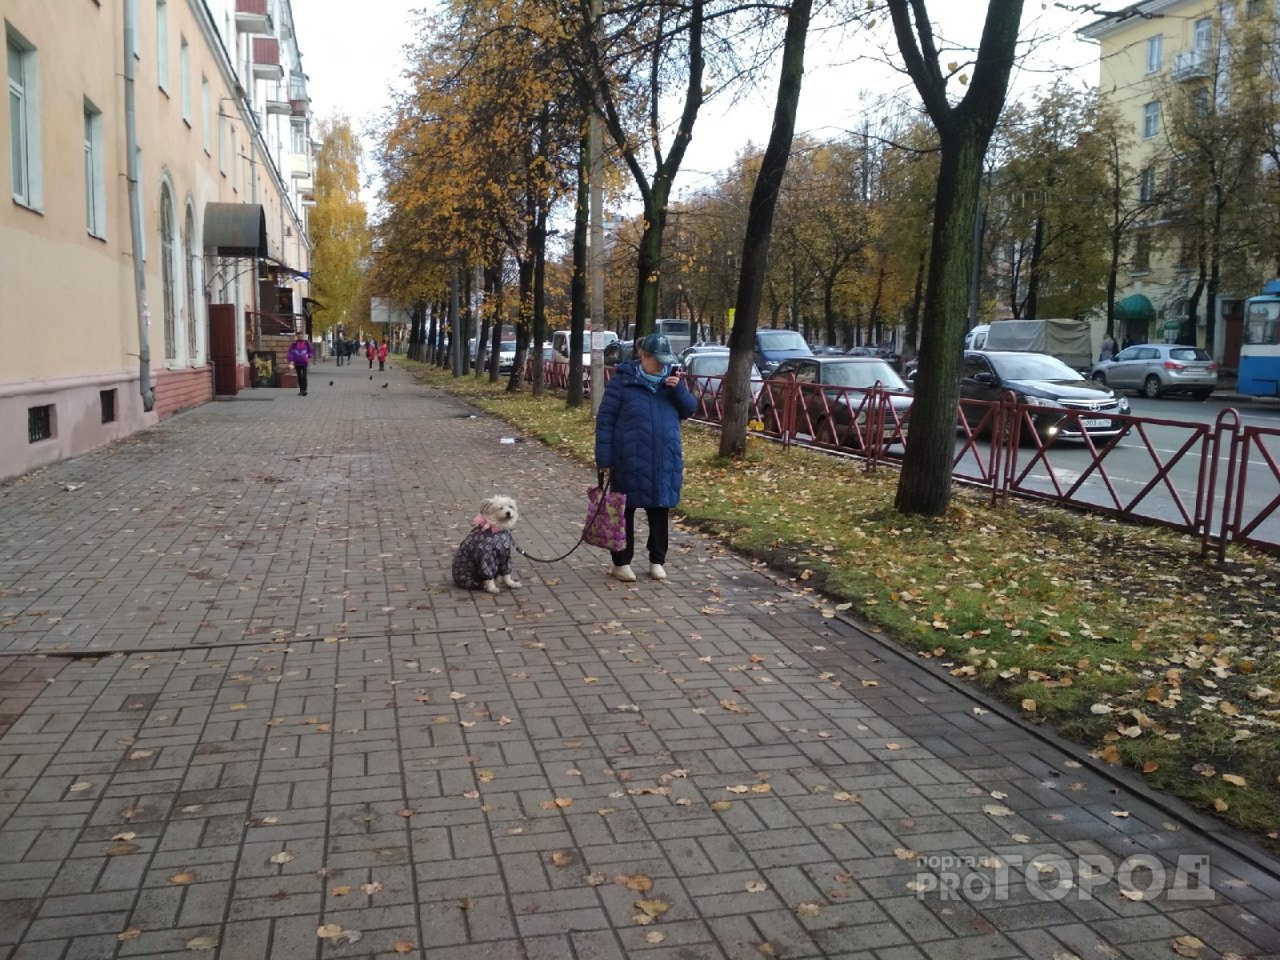 Ад для собачников: вводят новые правила содержания животных в Ярославле